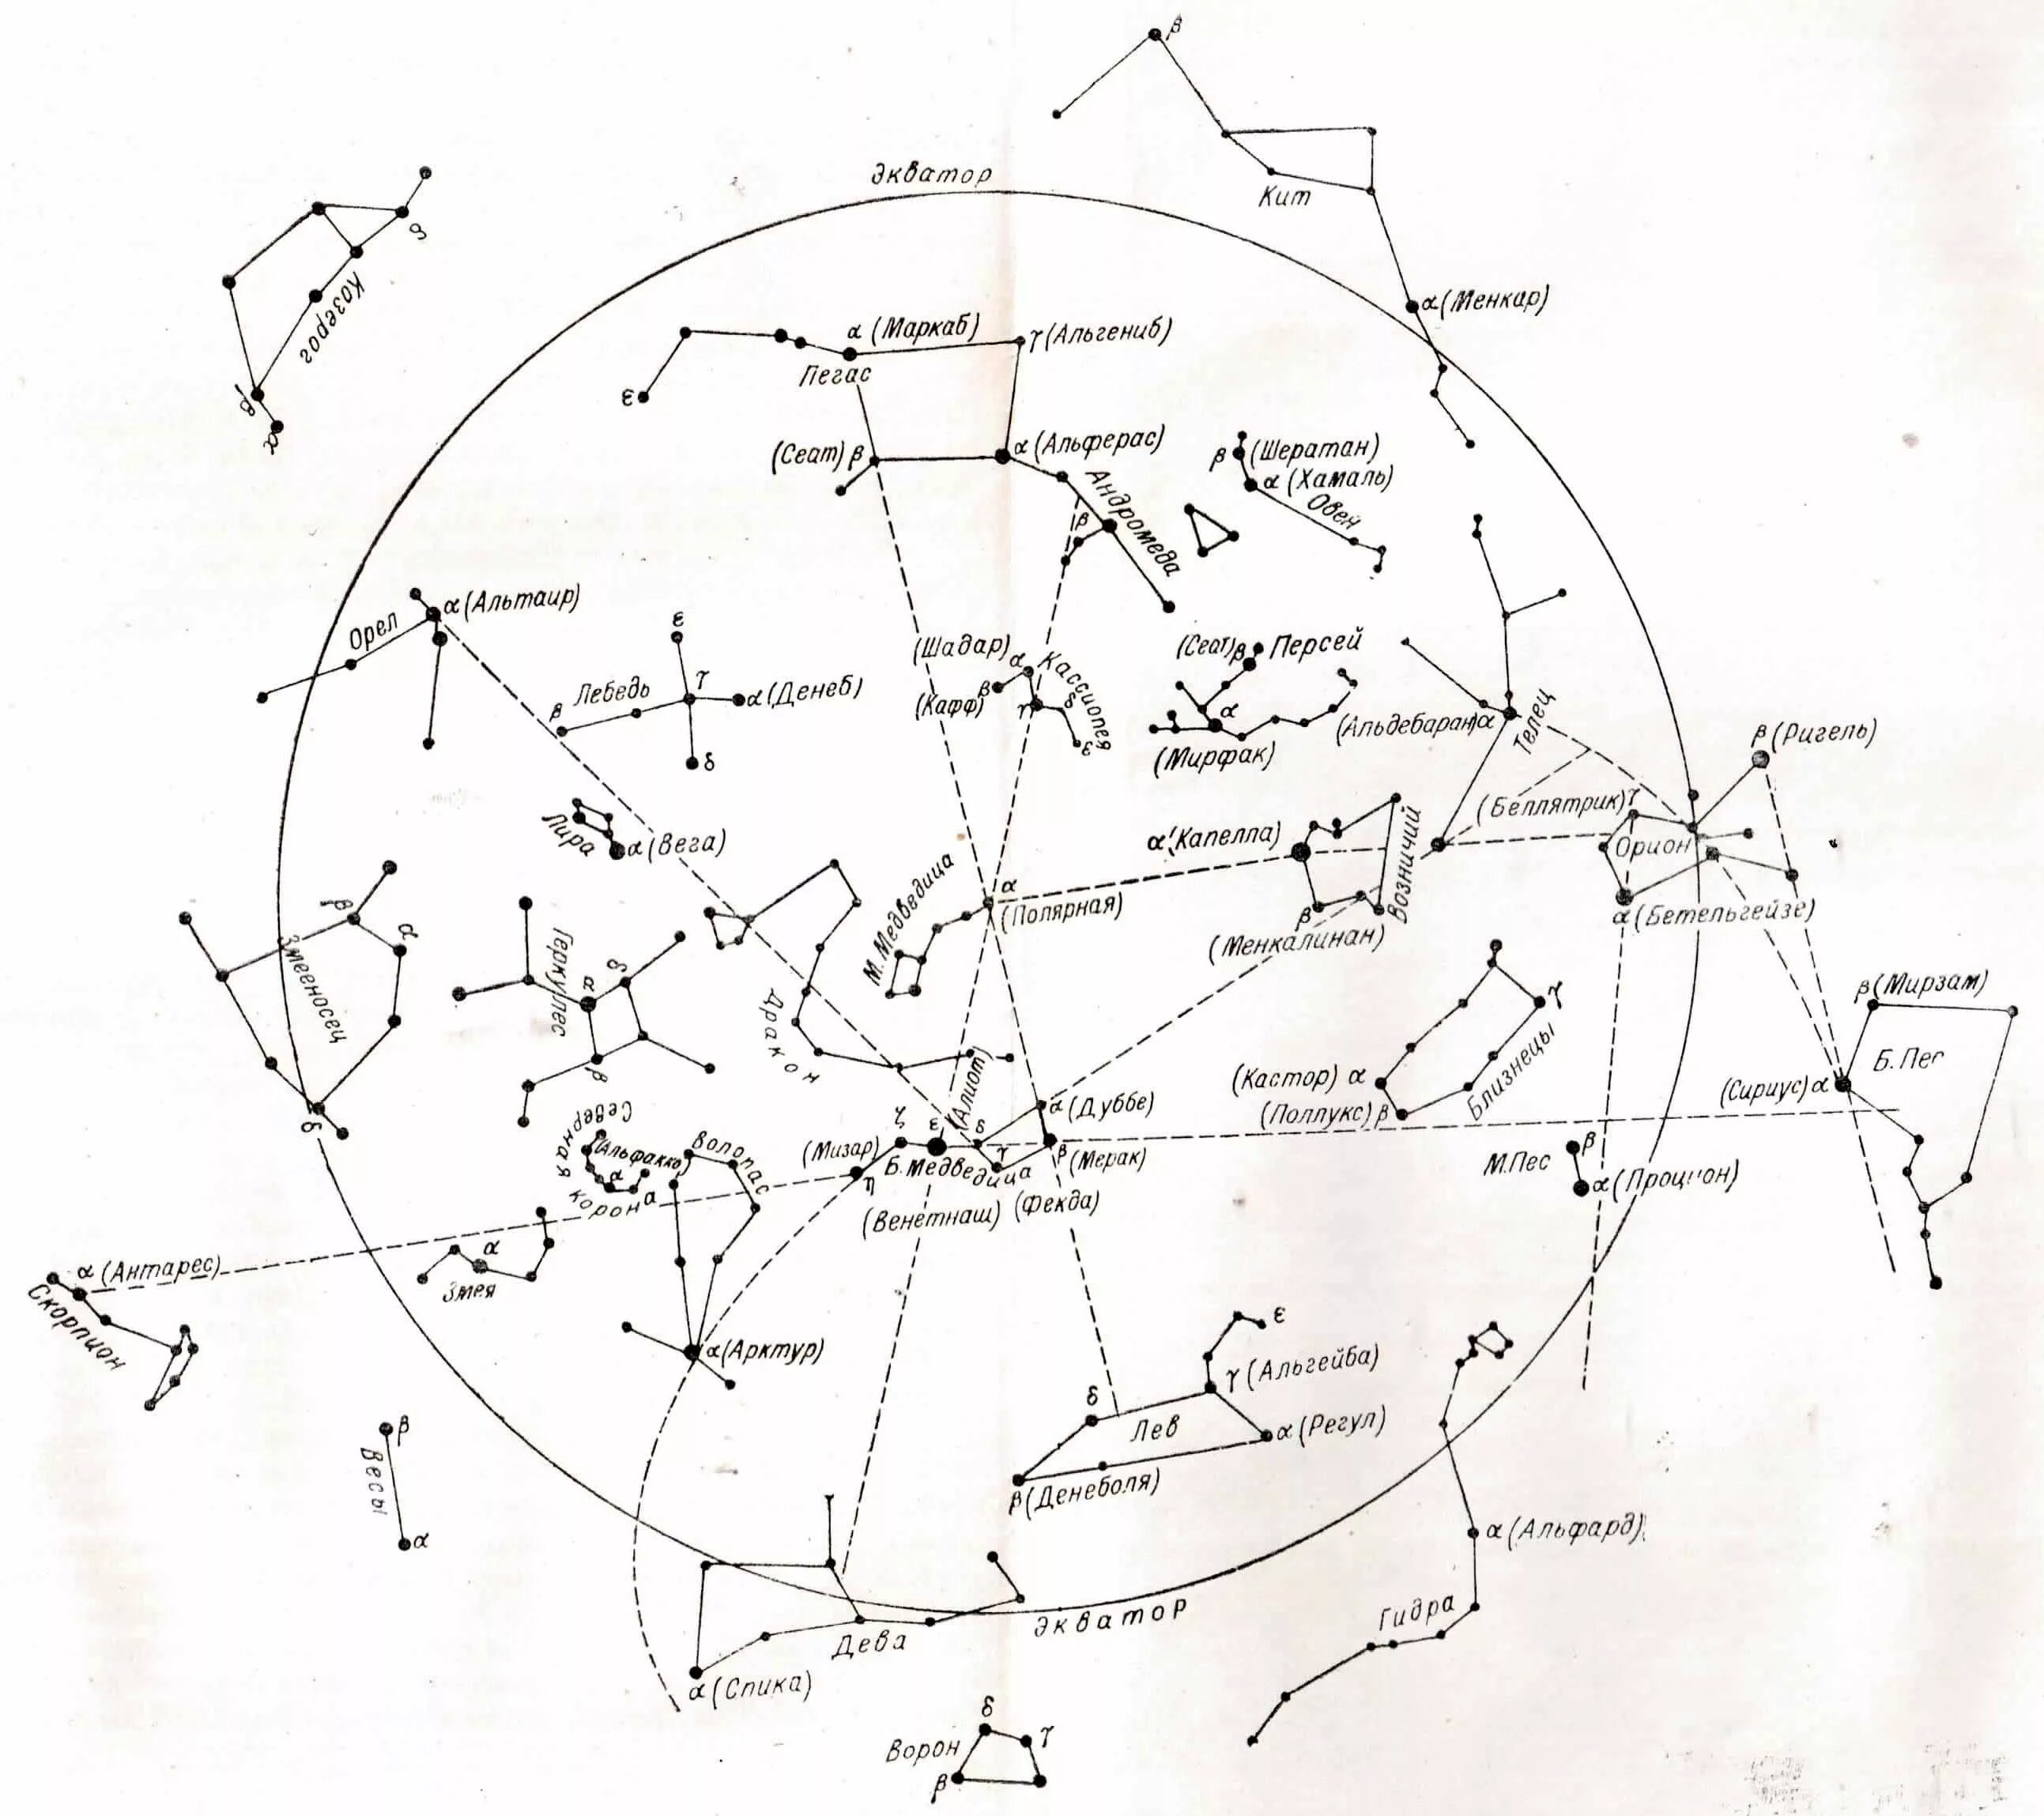 33 созвездия. Созвездие жертвенник на карте звездного неба. Карта звездного неба с названиями звезд Северного полушария. Звездная карта созвездия. Сириус на карте звездного неба Северного полушария.